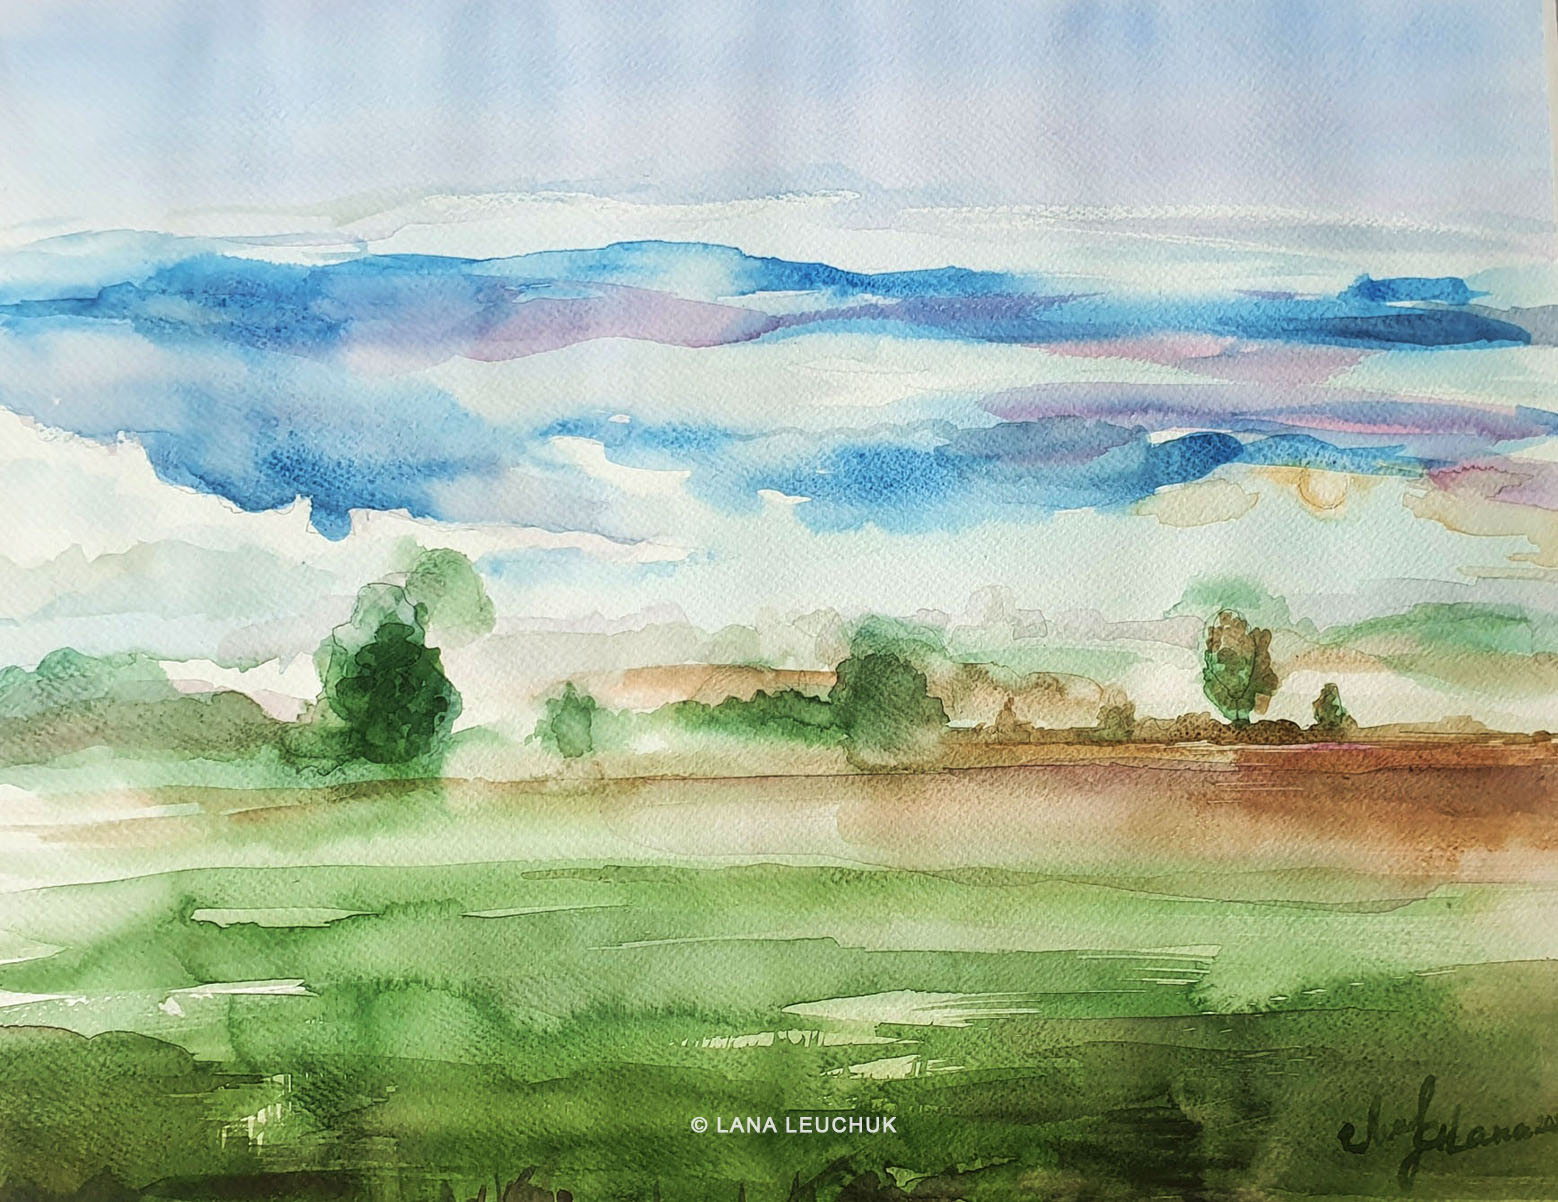 Lana Leuchuk-En dimmig morgon i Moljeryd-watercolor-2021-W